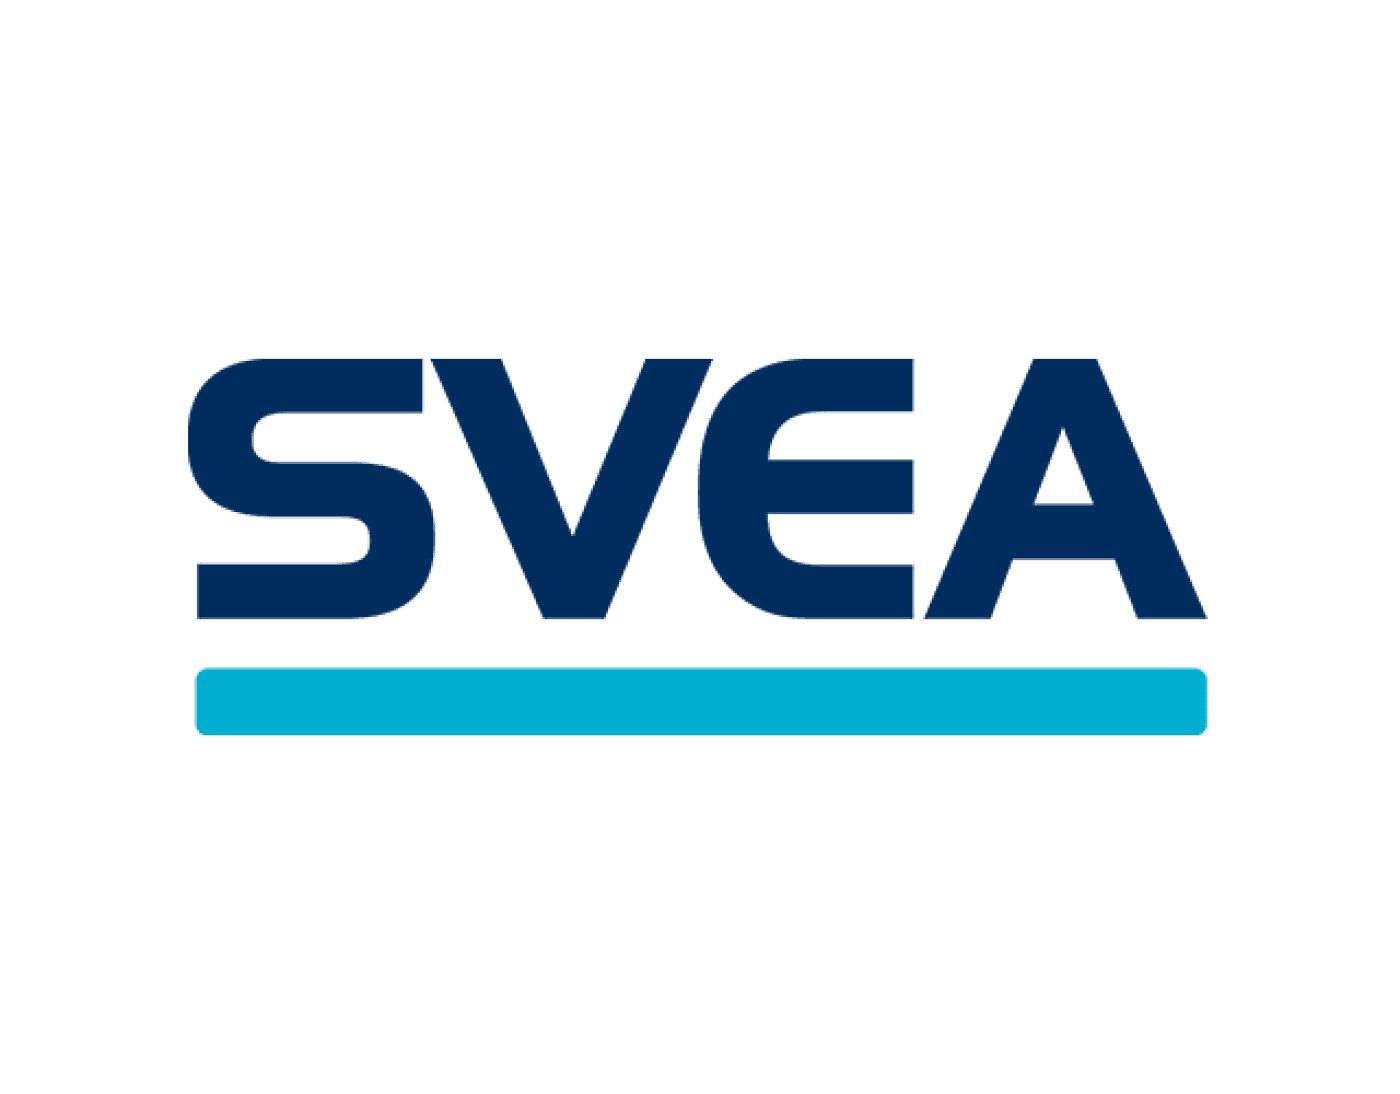 svea-640x500-ny.png